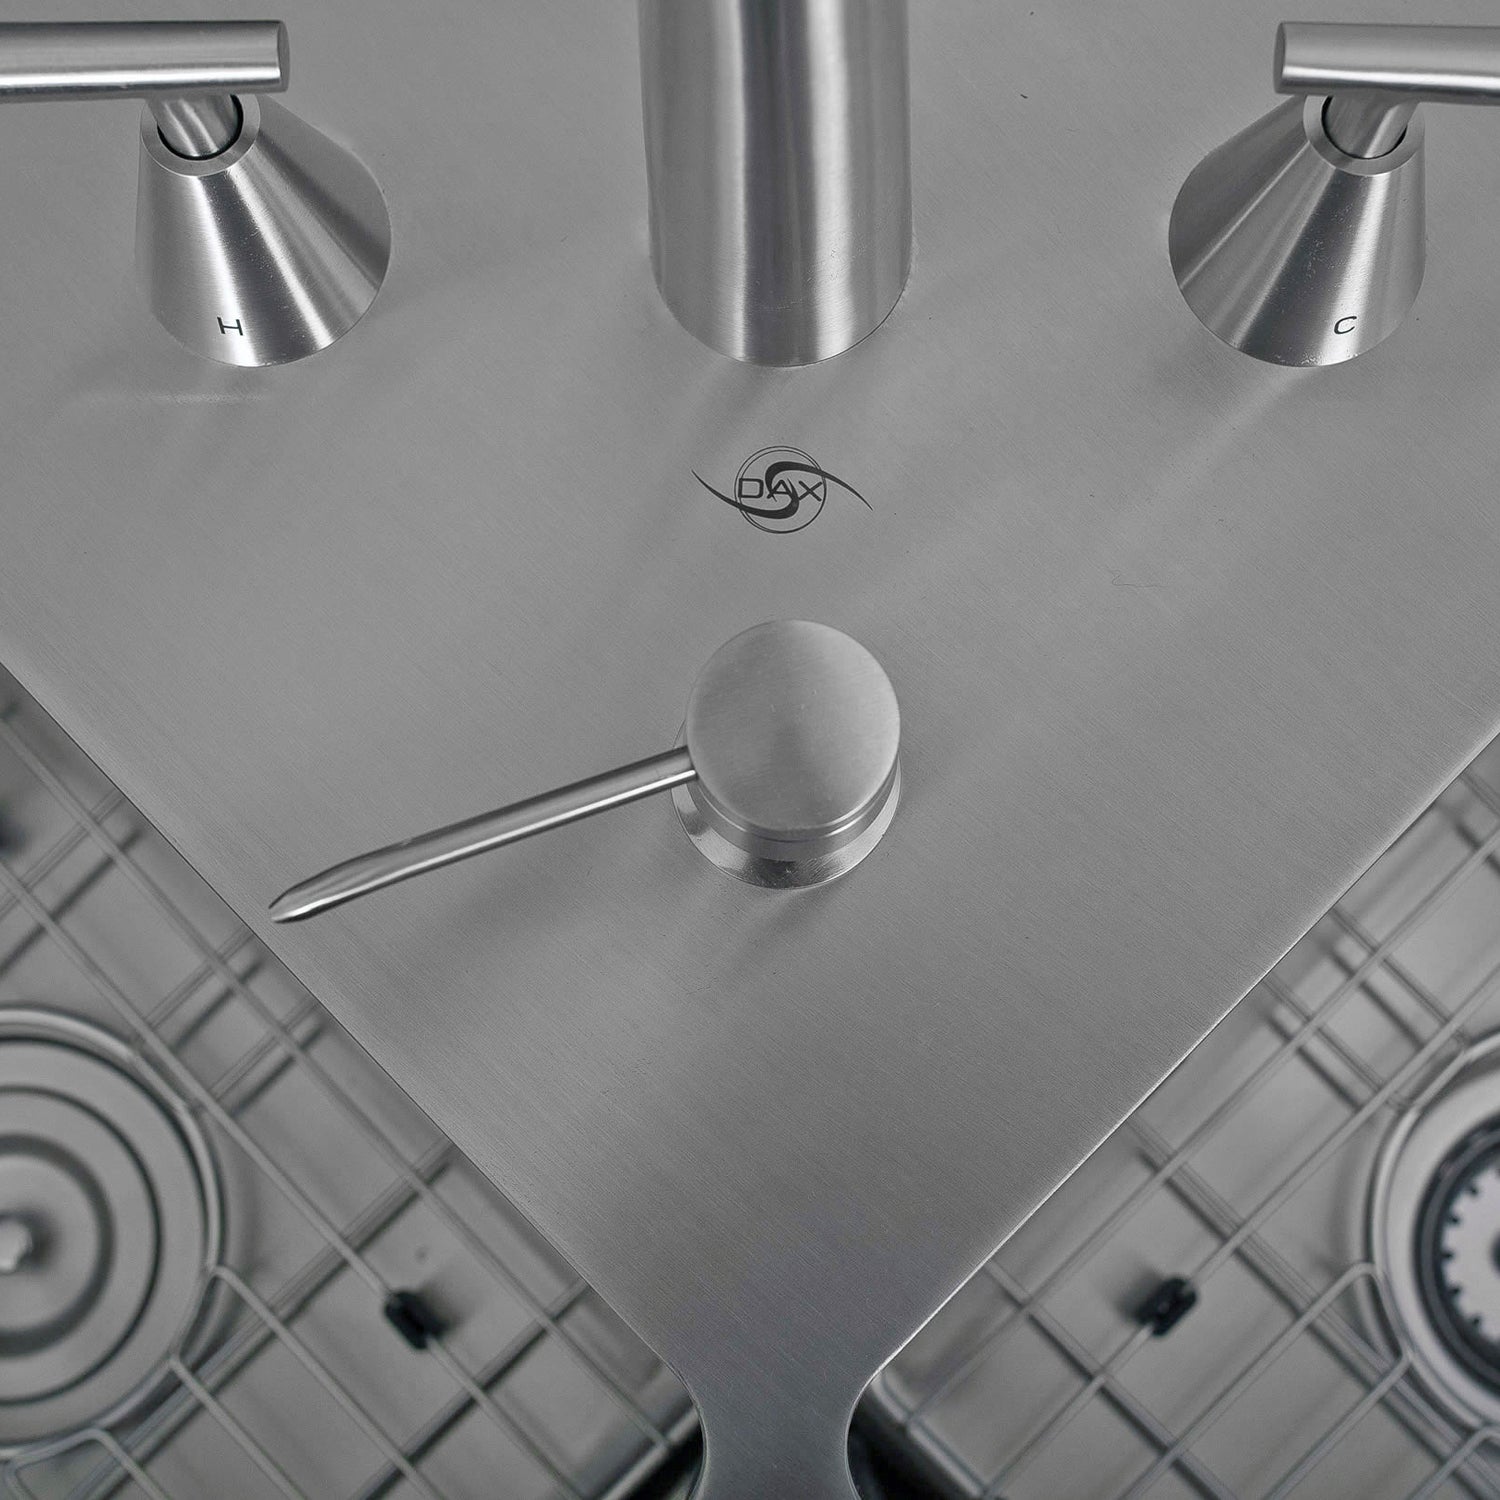 DAX Handmade Corner Kitchen Sink, 16 Gauge, Brushed Stainless Steel Finish, 44-3/8 x 23-1/2 x 10 Inches (DAX-334)